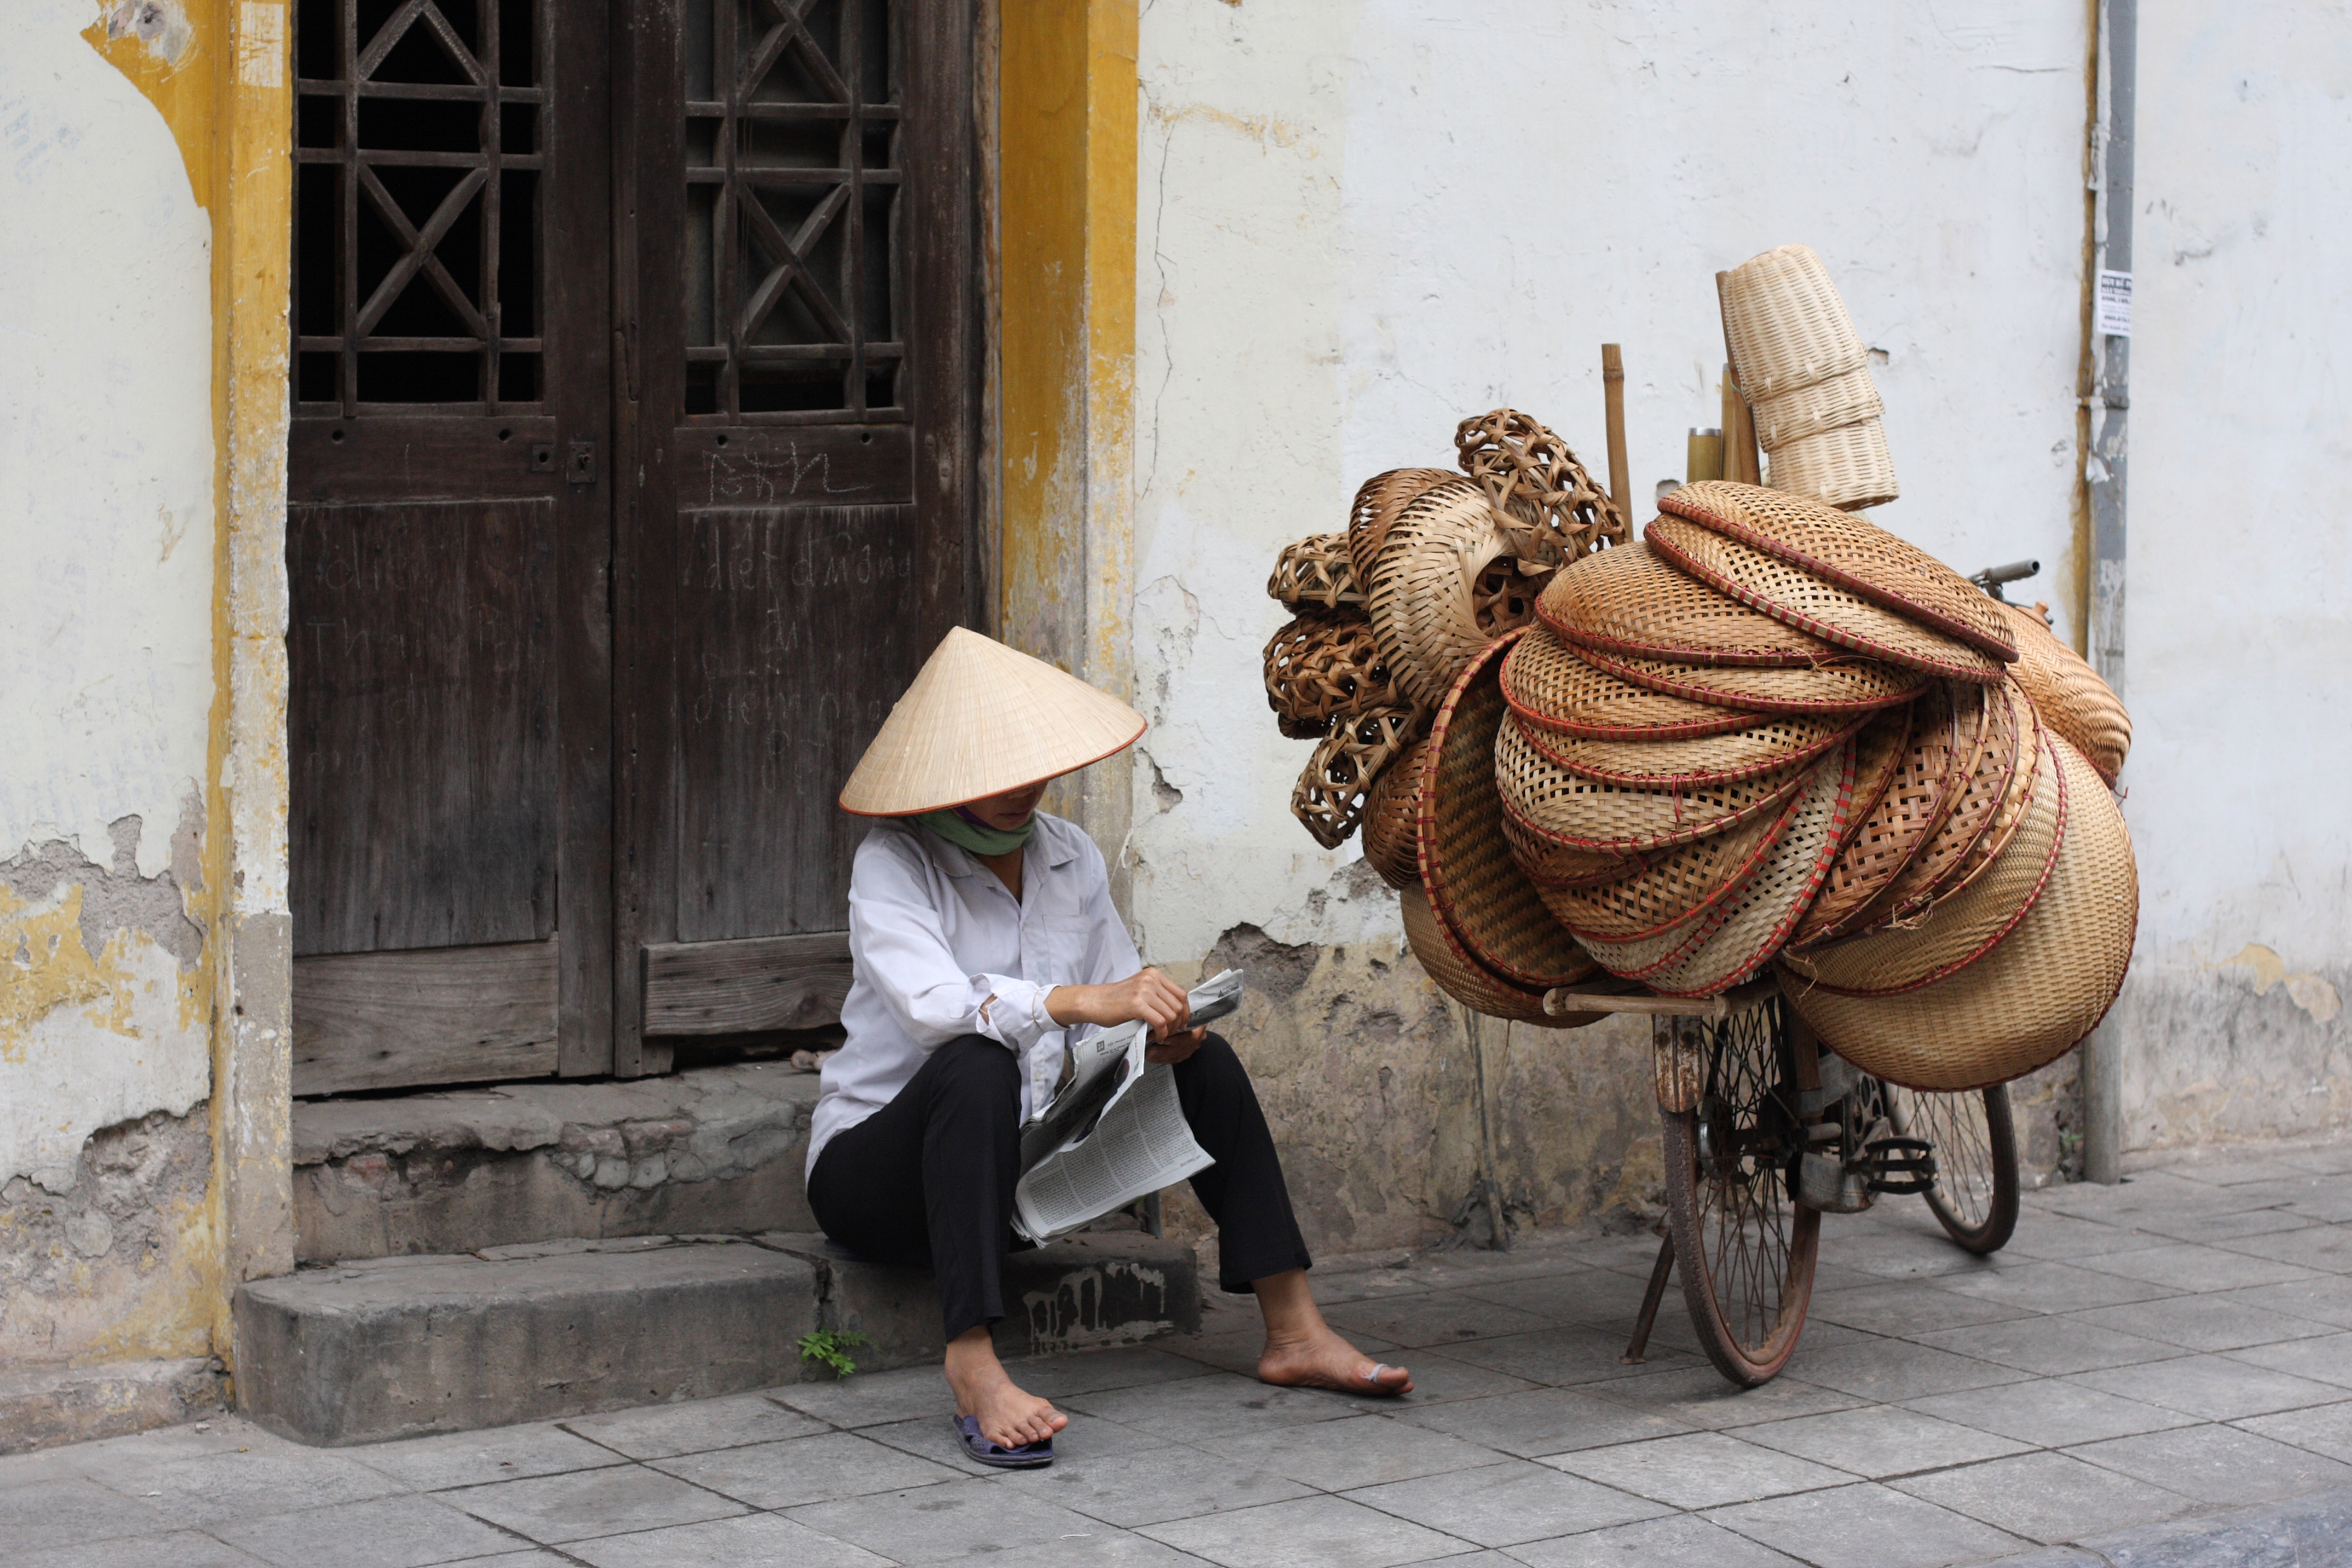 Street vendors in old quarter, Hanoi, Vietnam